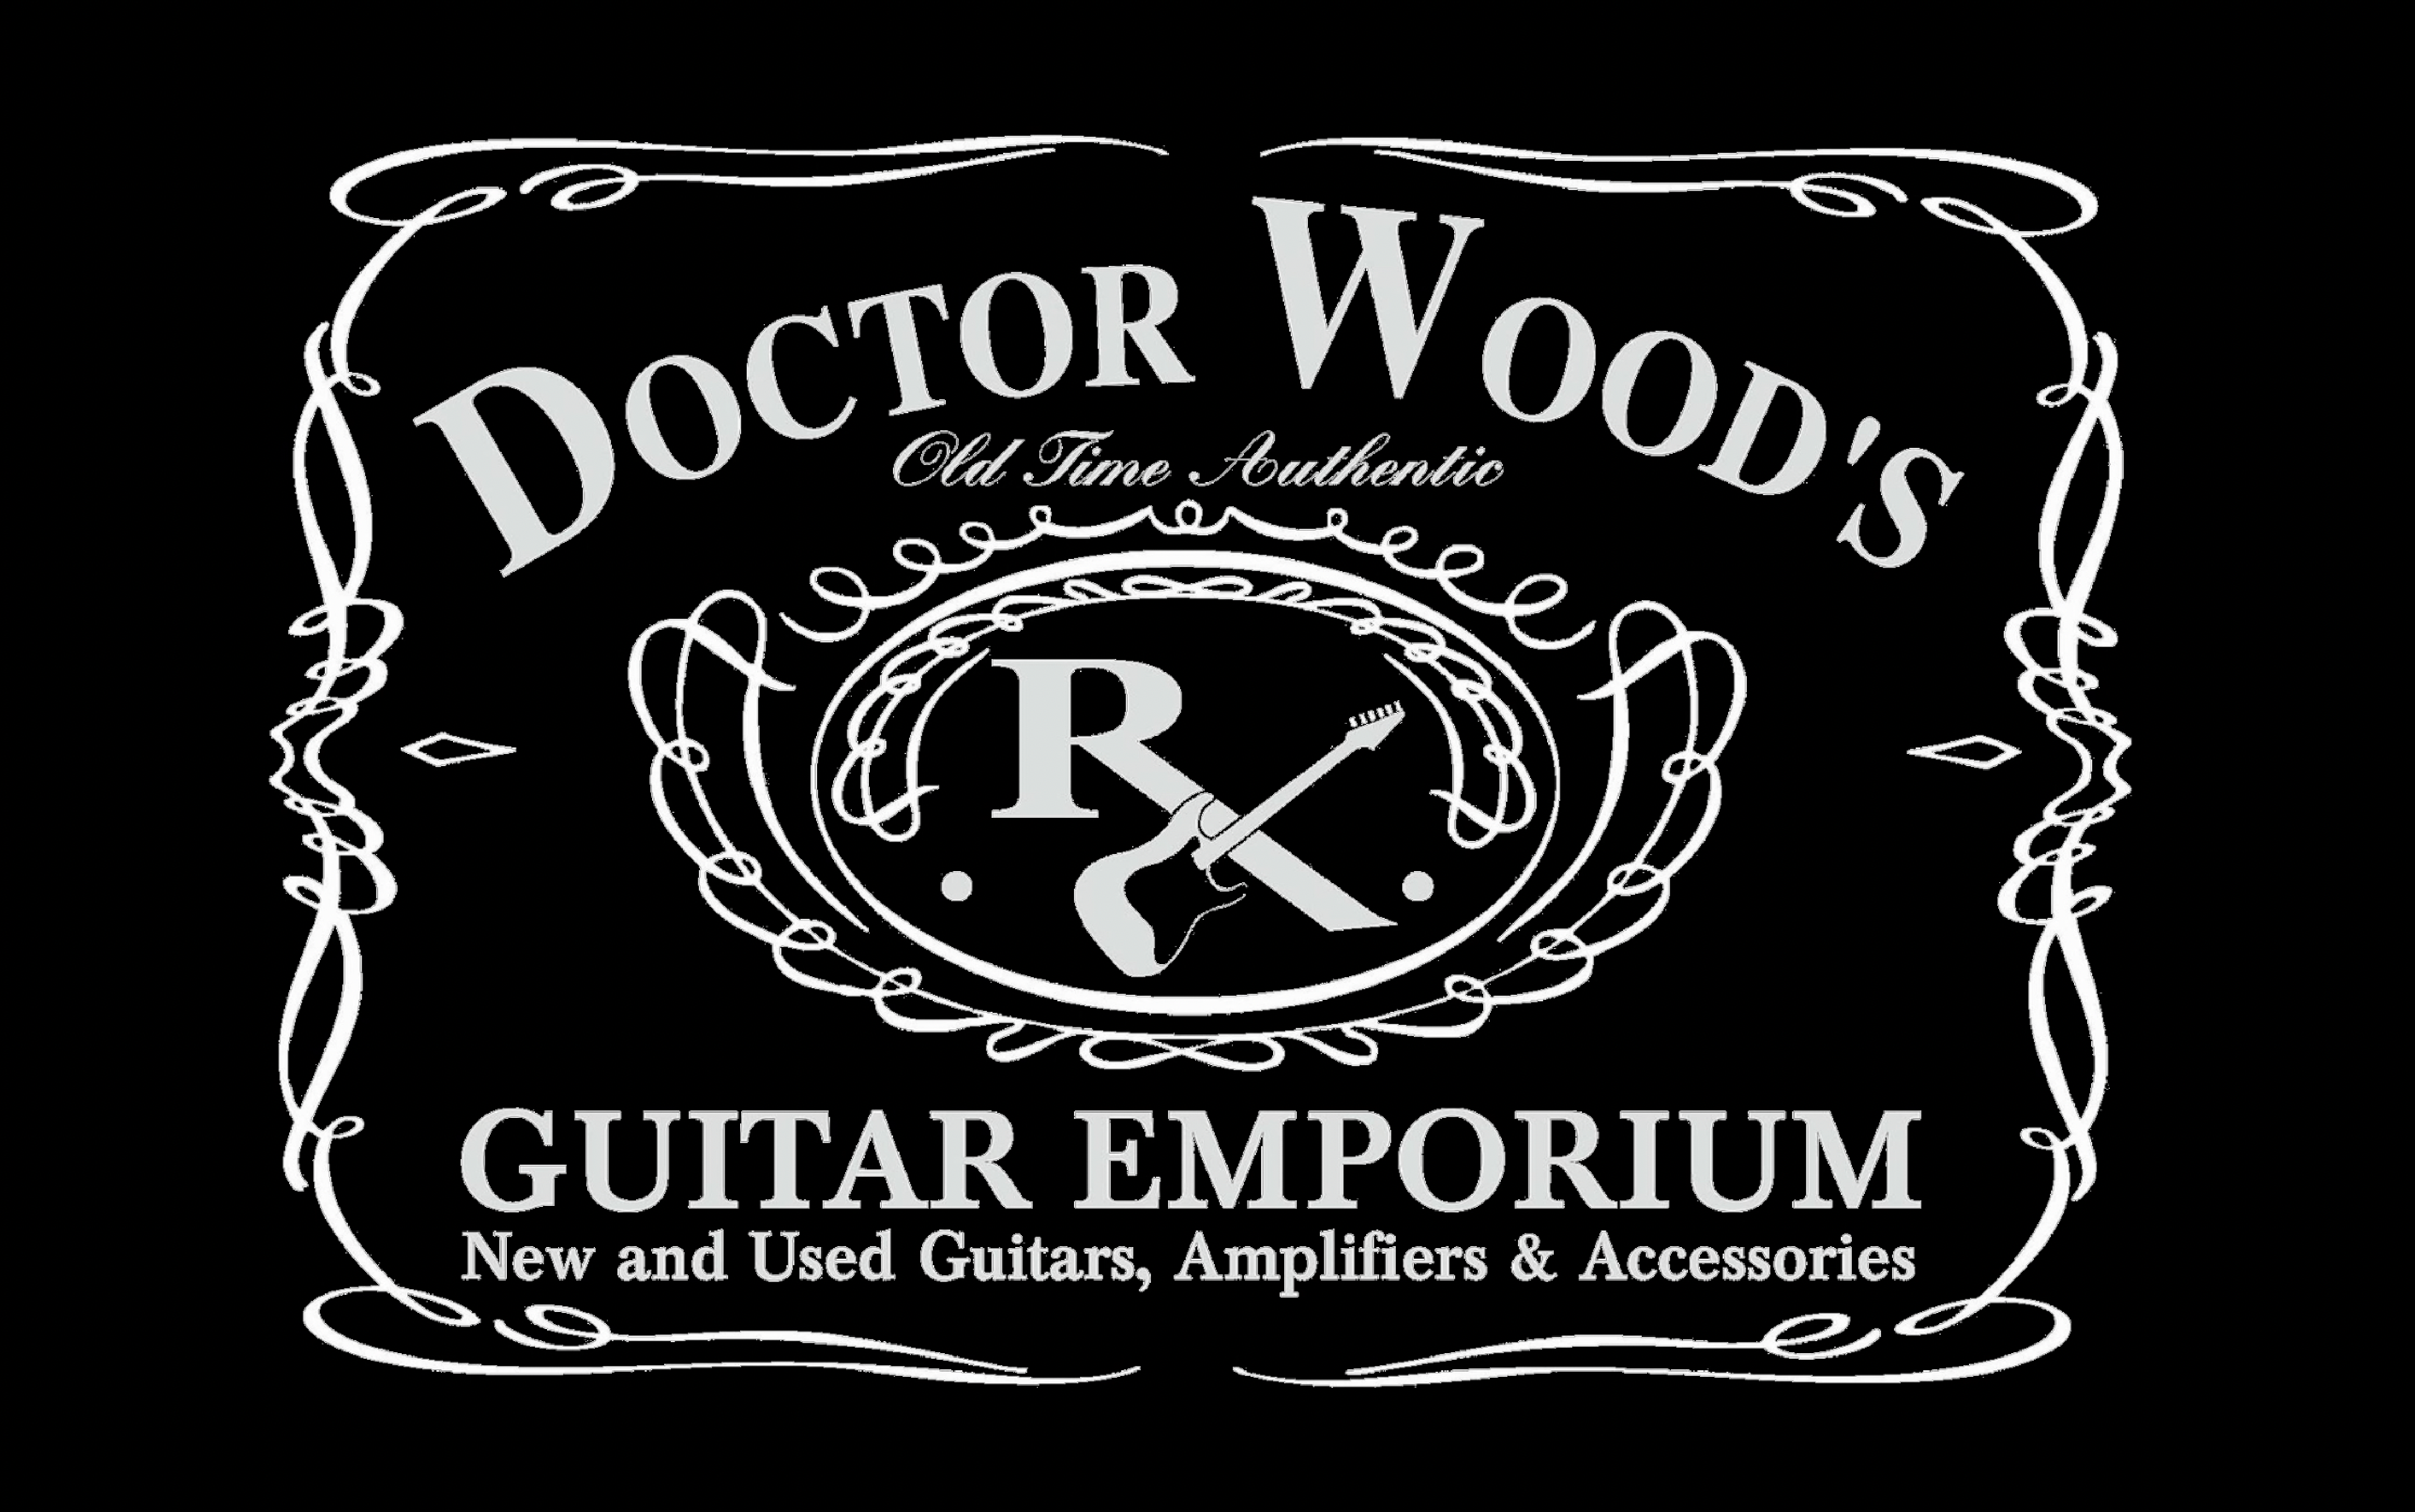 #1 Music Store Dr Wood Guitar Emporium